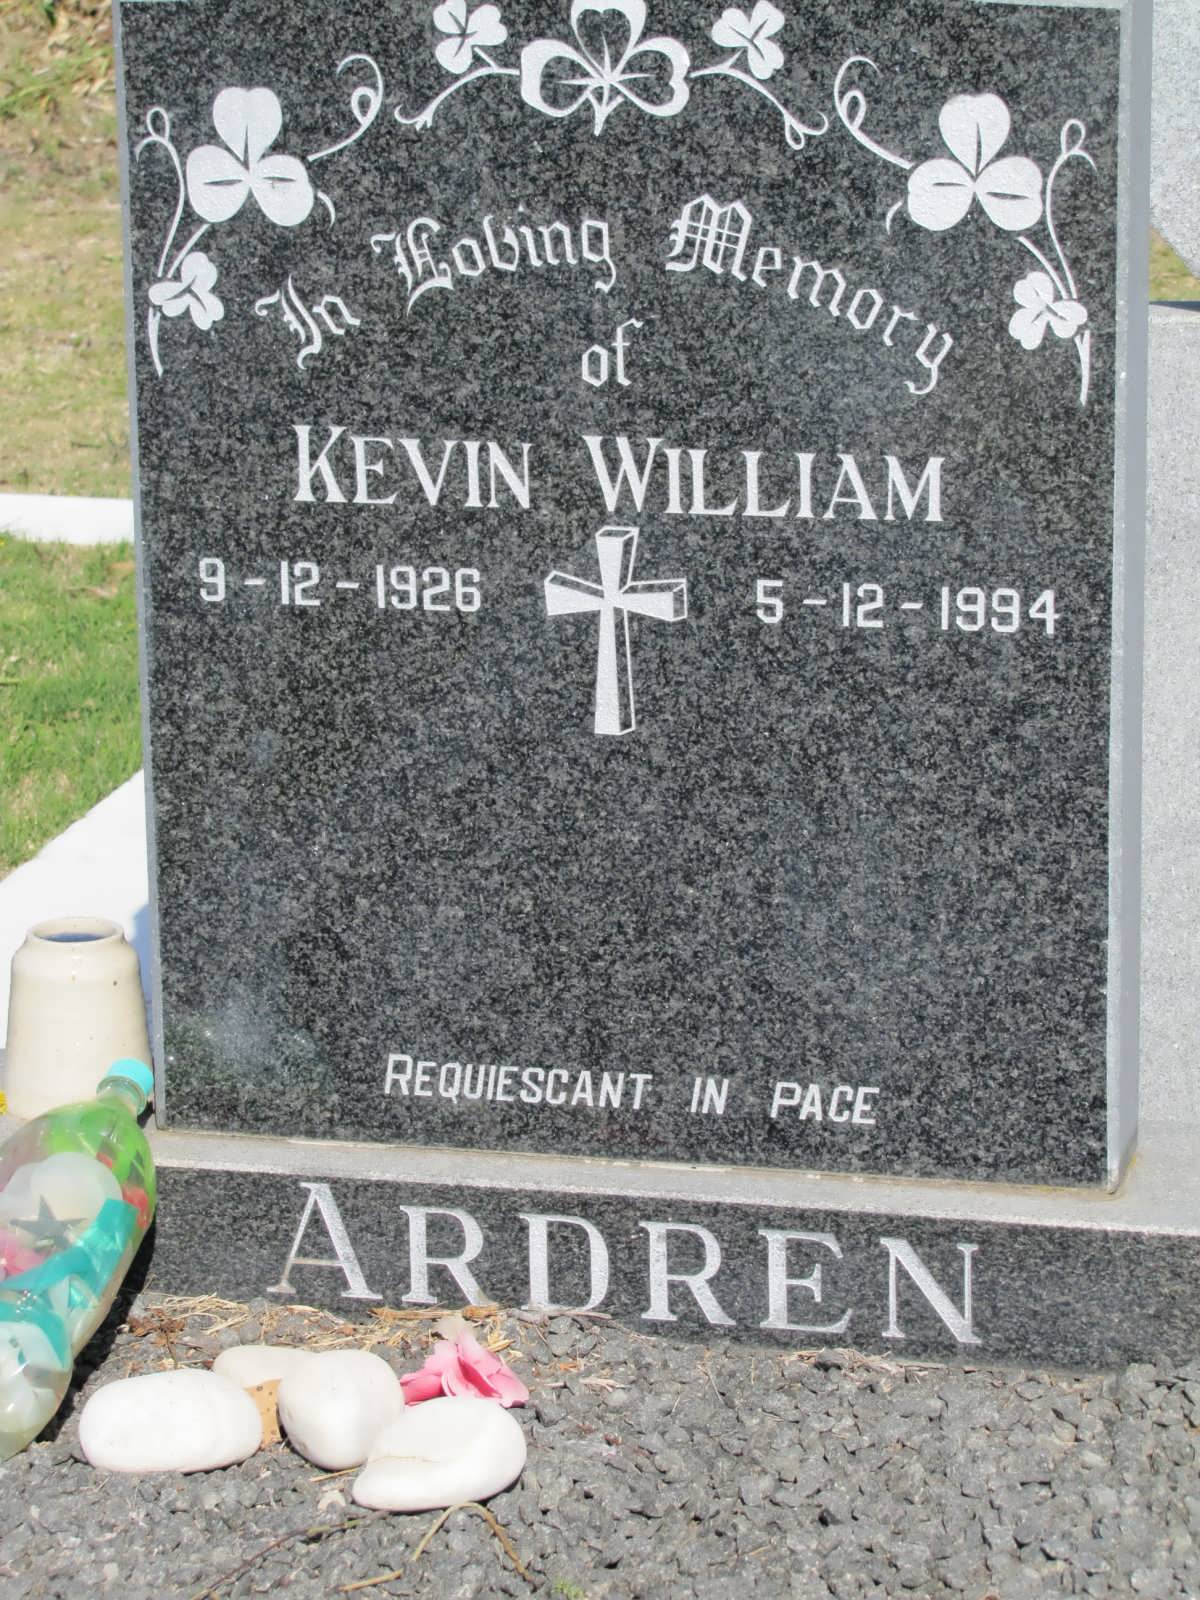 ARDREN Kevin William 1926-1994